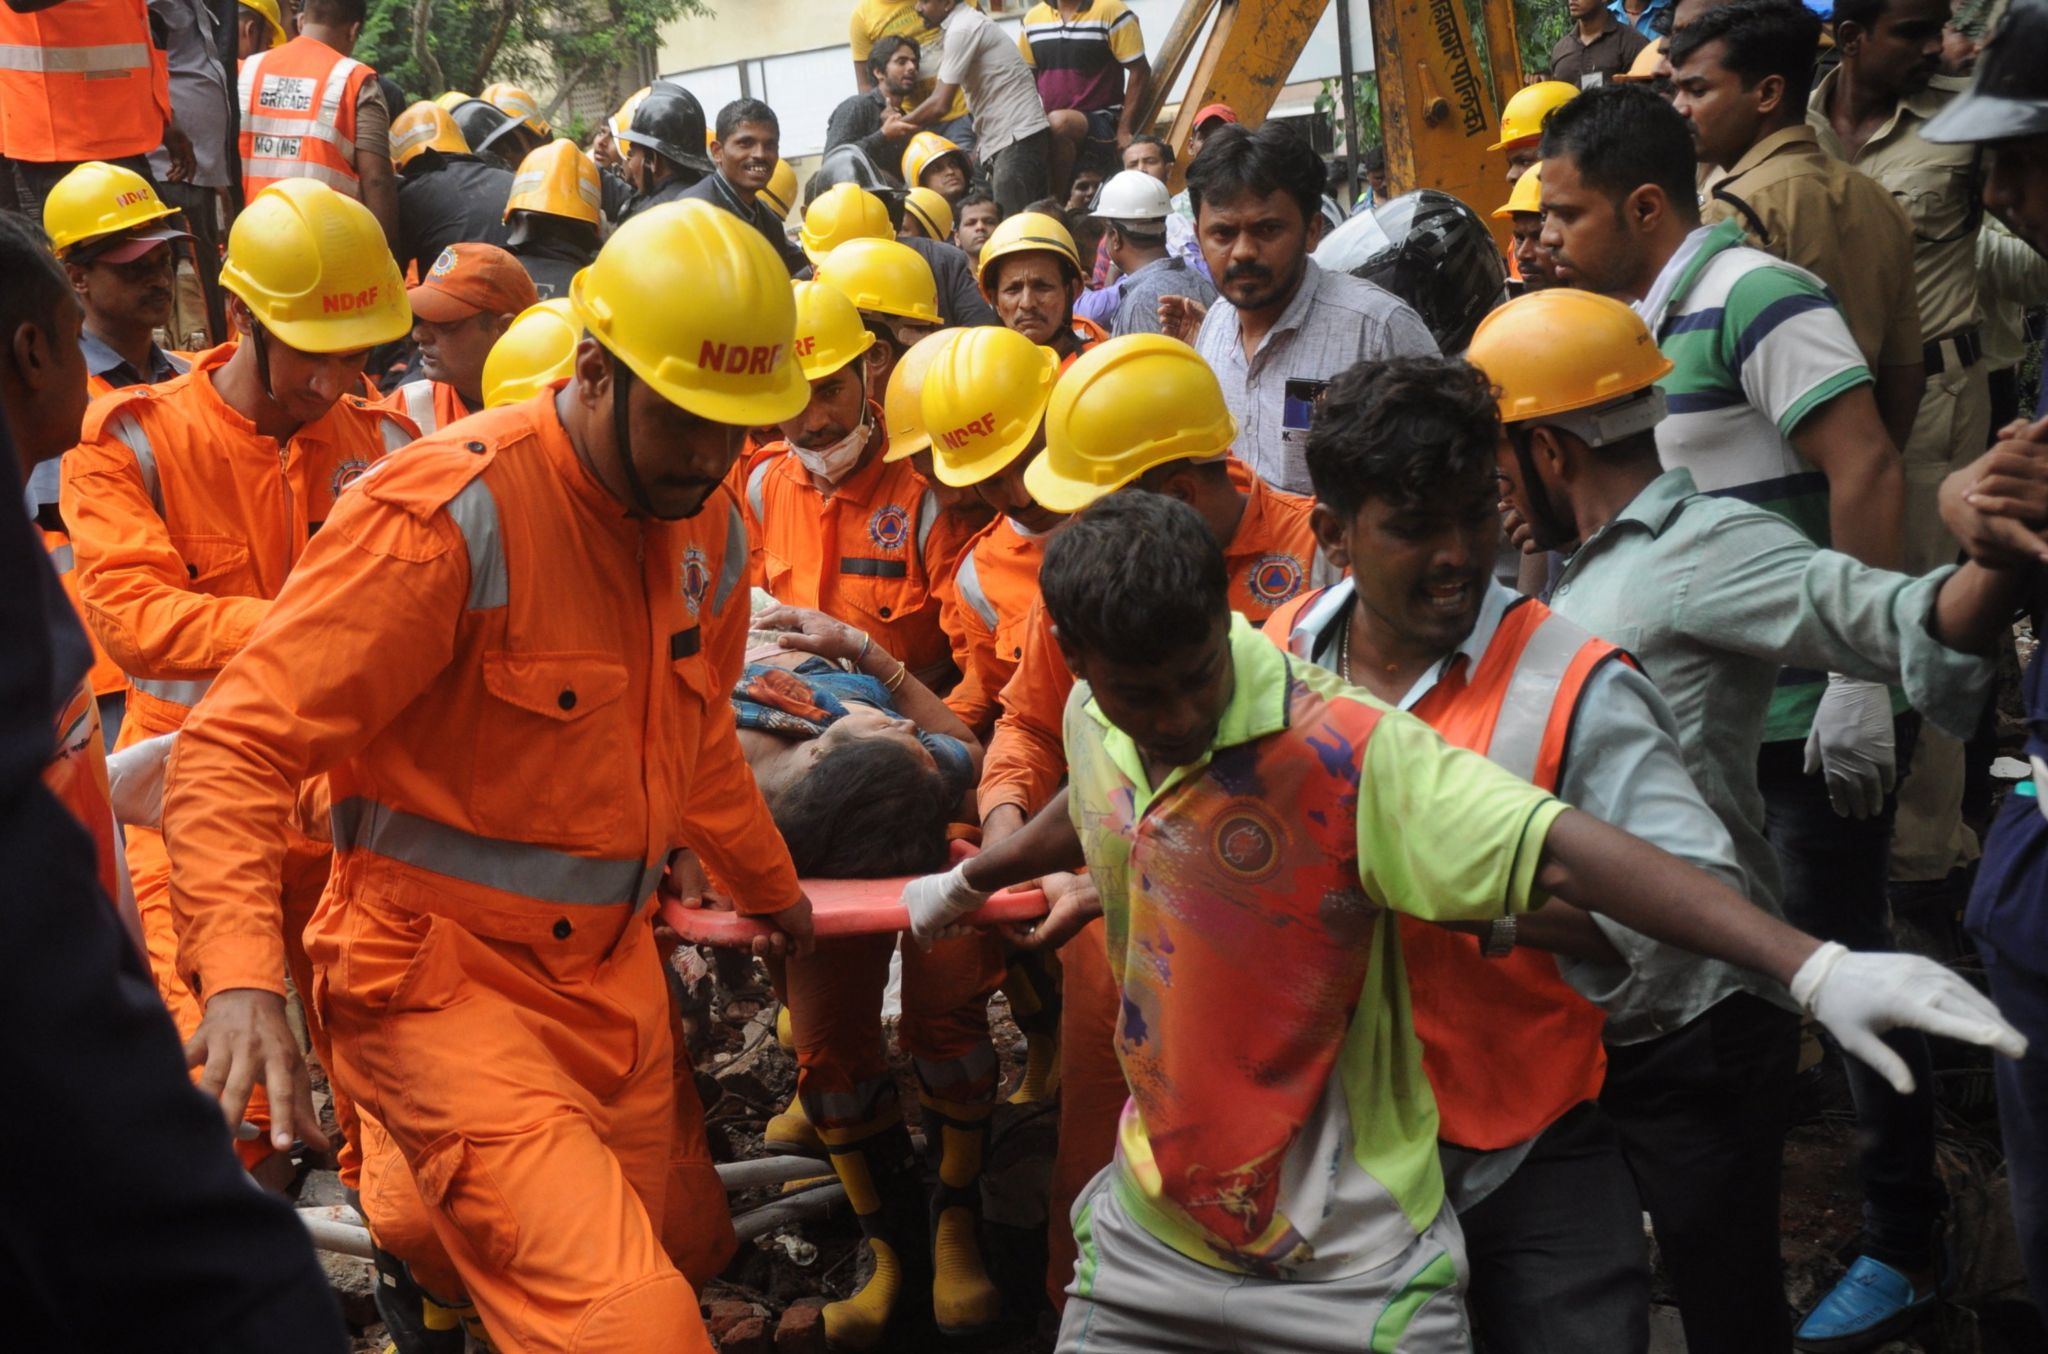 Rescuers at the scene in Mumbai